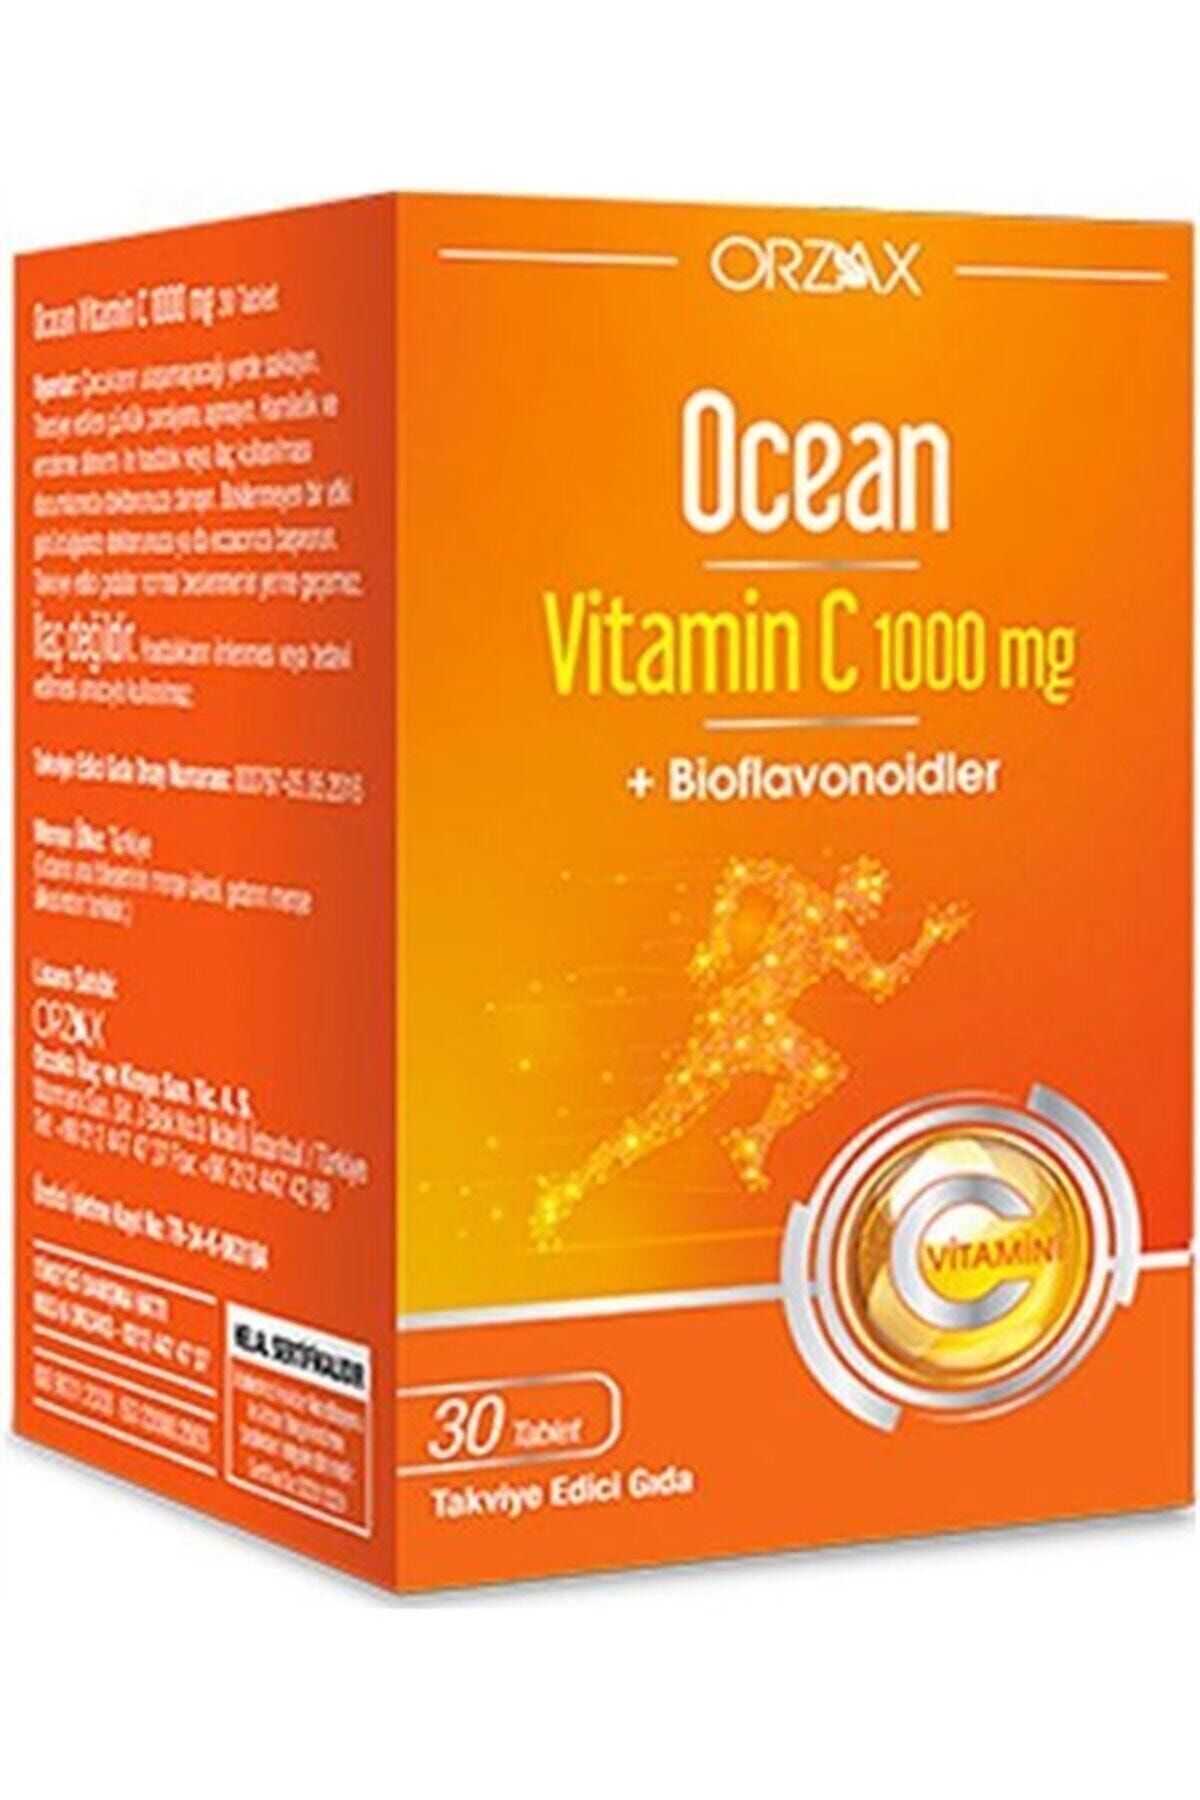 Orzax Ocean Vitamin C 1000 mg 30 Tablet